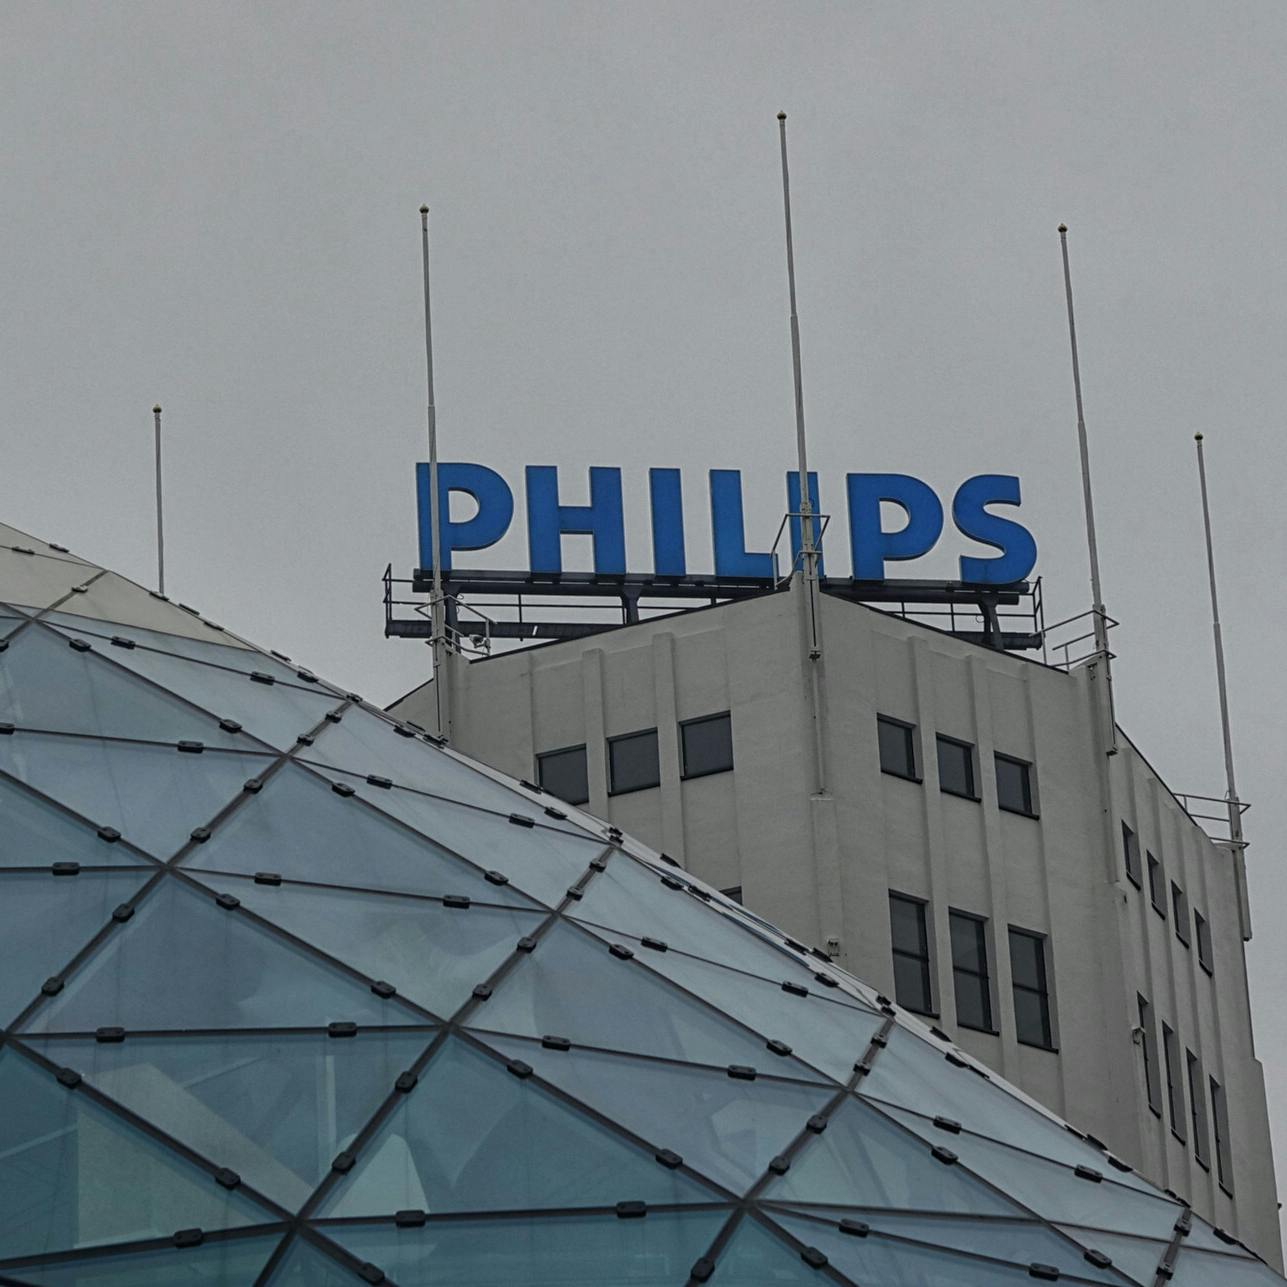 Philips zet 165 miljoen extra opzij voor terugroepactie apneu-apparaten